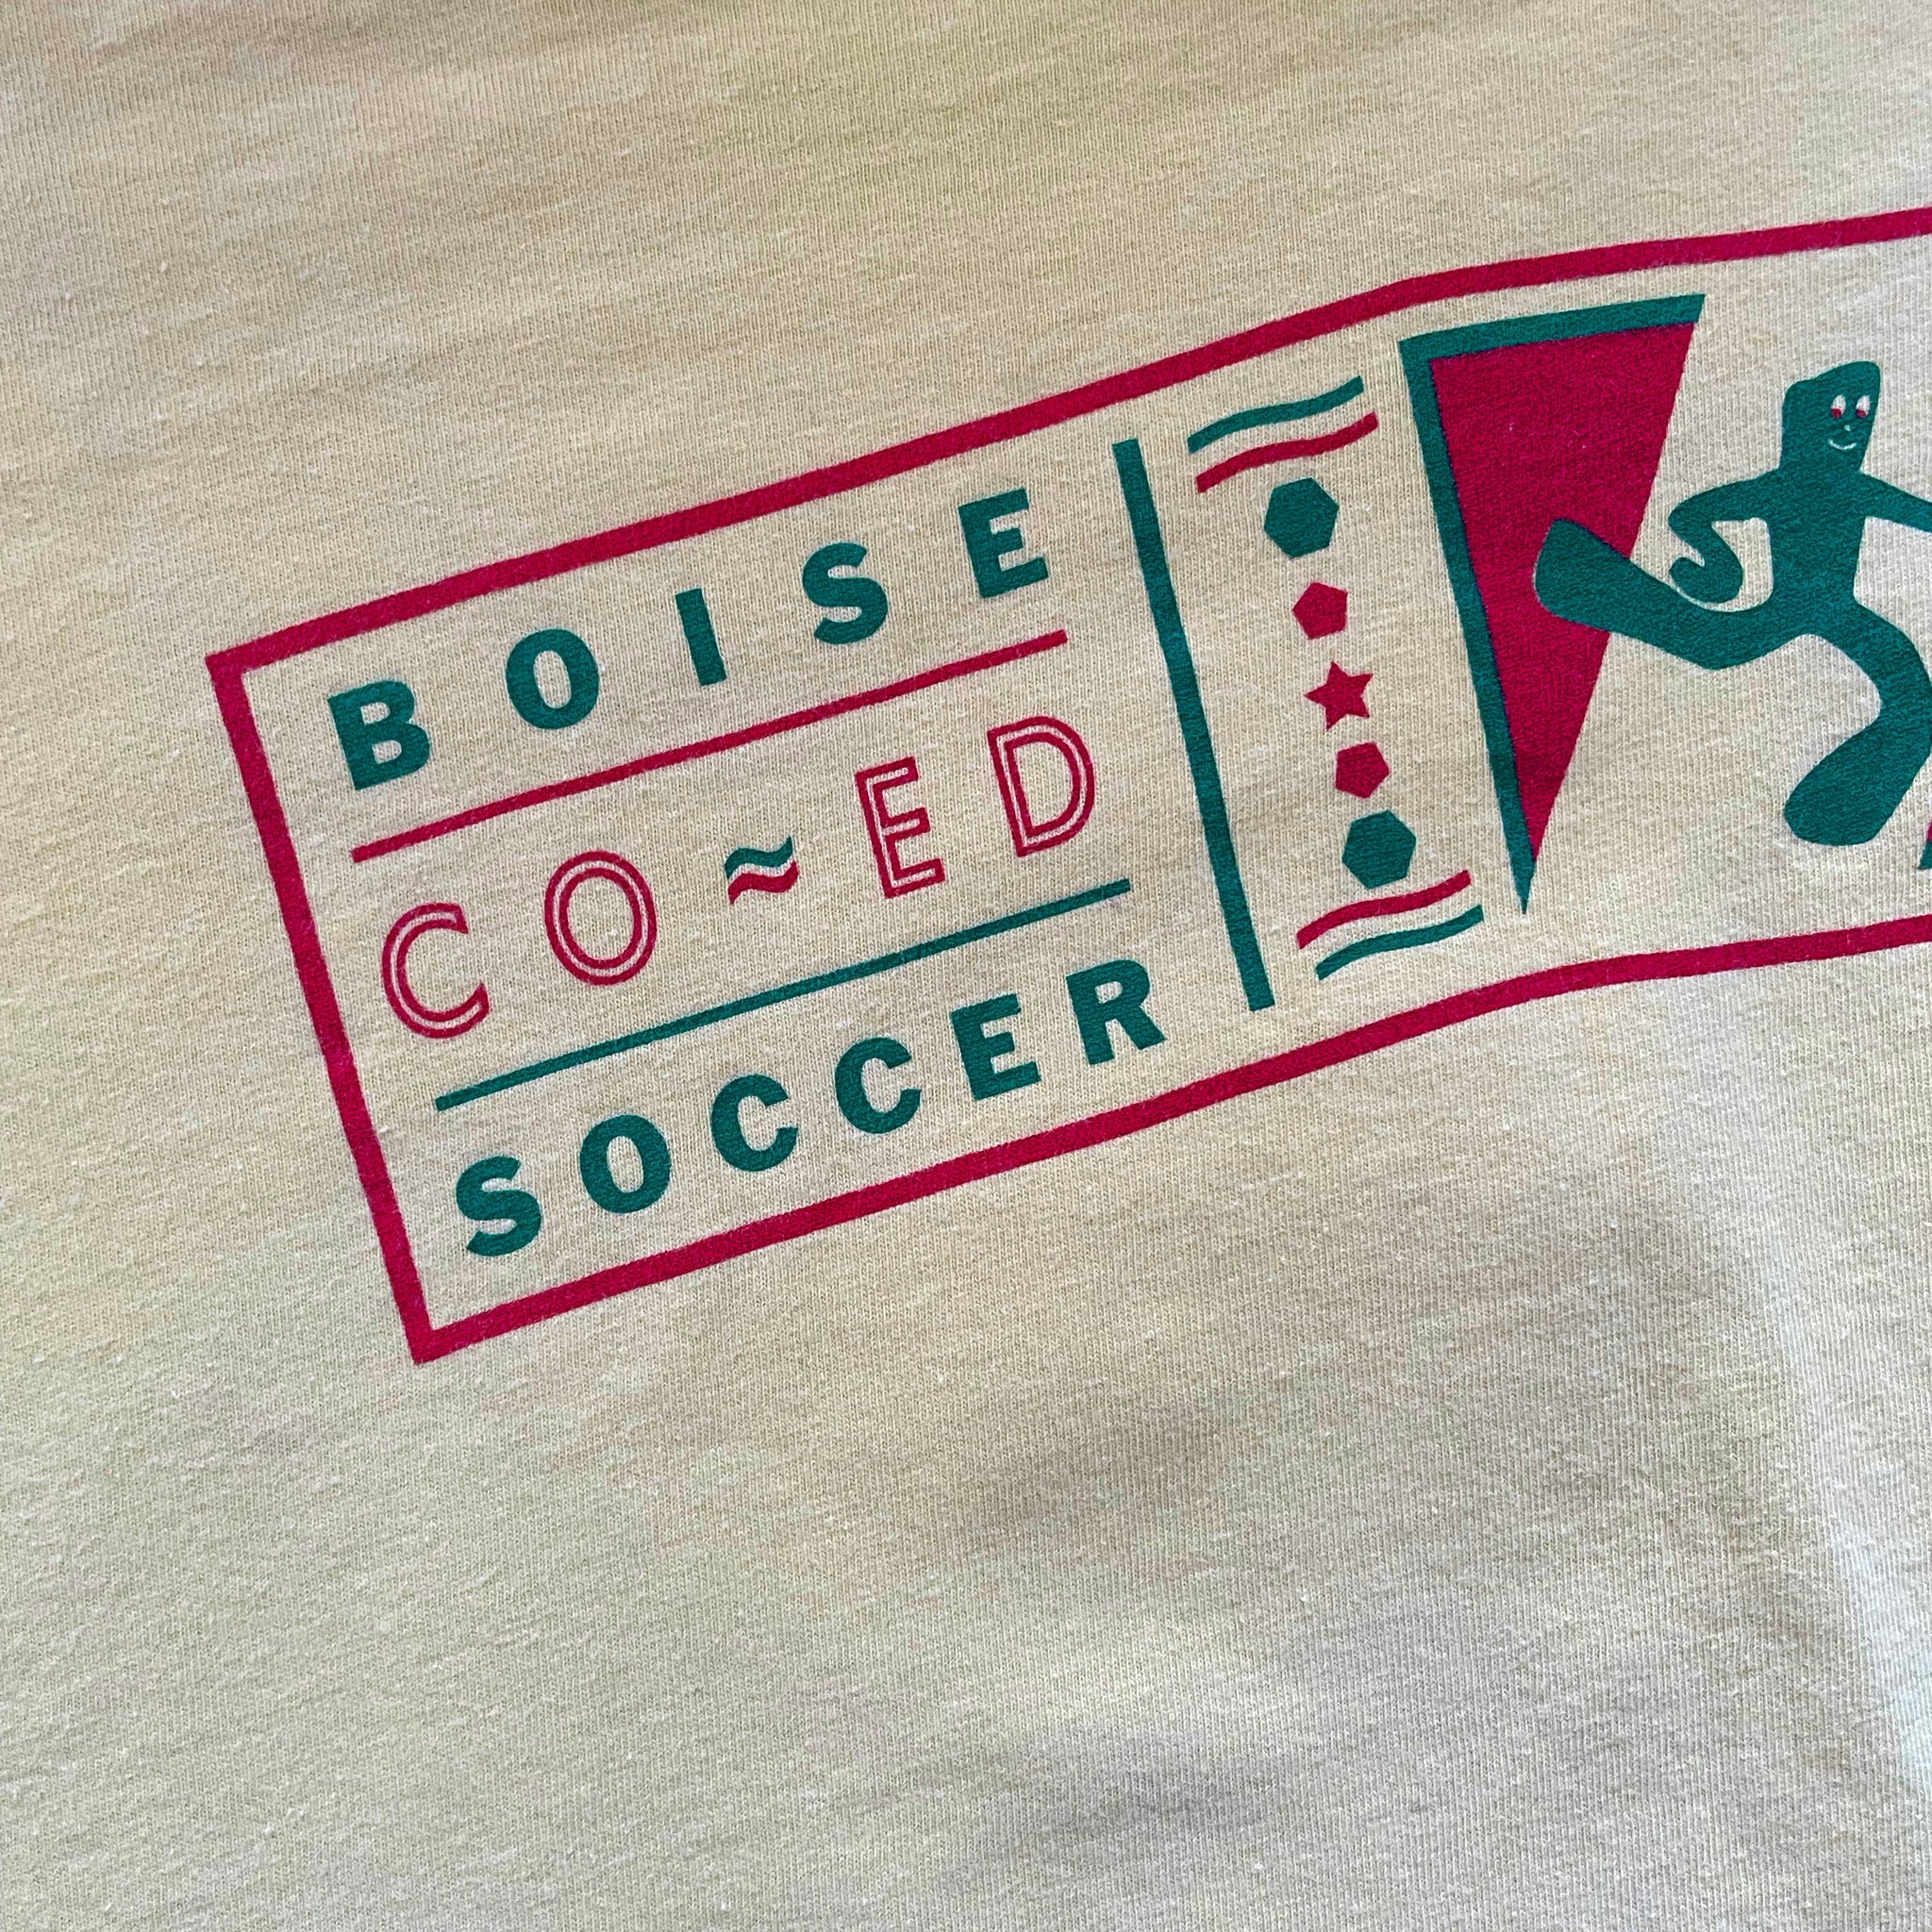 1999 Boise Co-Ed "Gumbro" T-Shirt - XL